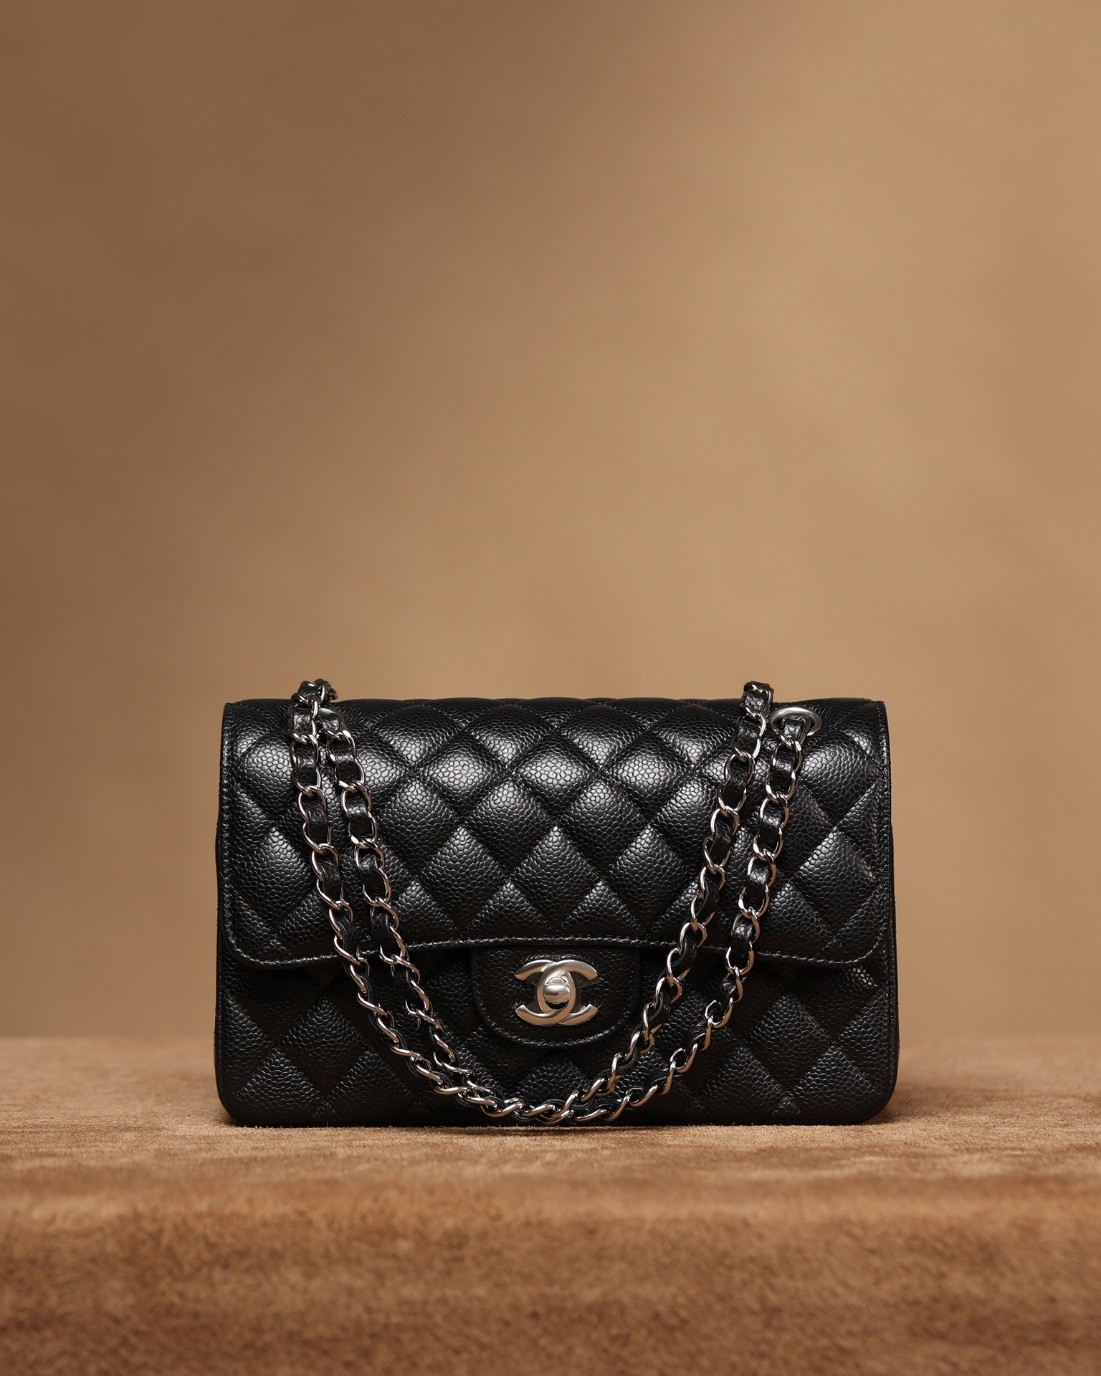 How good quality is a Shebag Chanel CF small 23cm bag? (2023 updated)-ఉత్తమ నాణ్యత నకిలీ లూయిస్ విట్టన్ బ్యాగ్ ఆన్‌లైన్ స్టోర్, రెప్లికా డిజైనర్ బ్యాగ్ రు